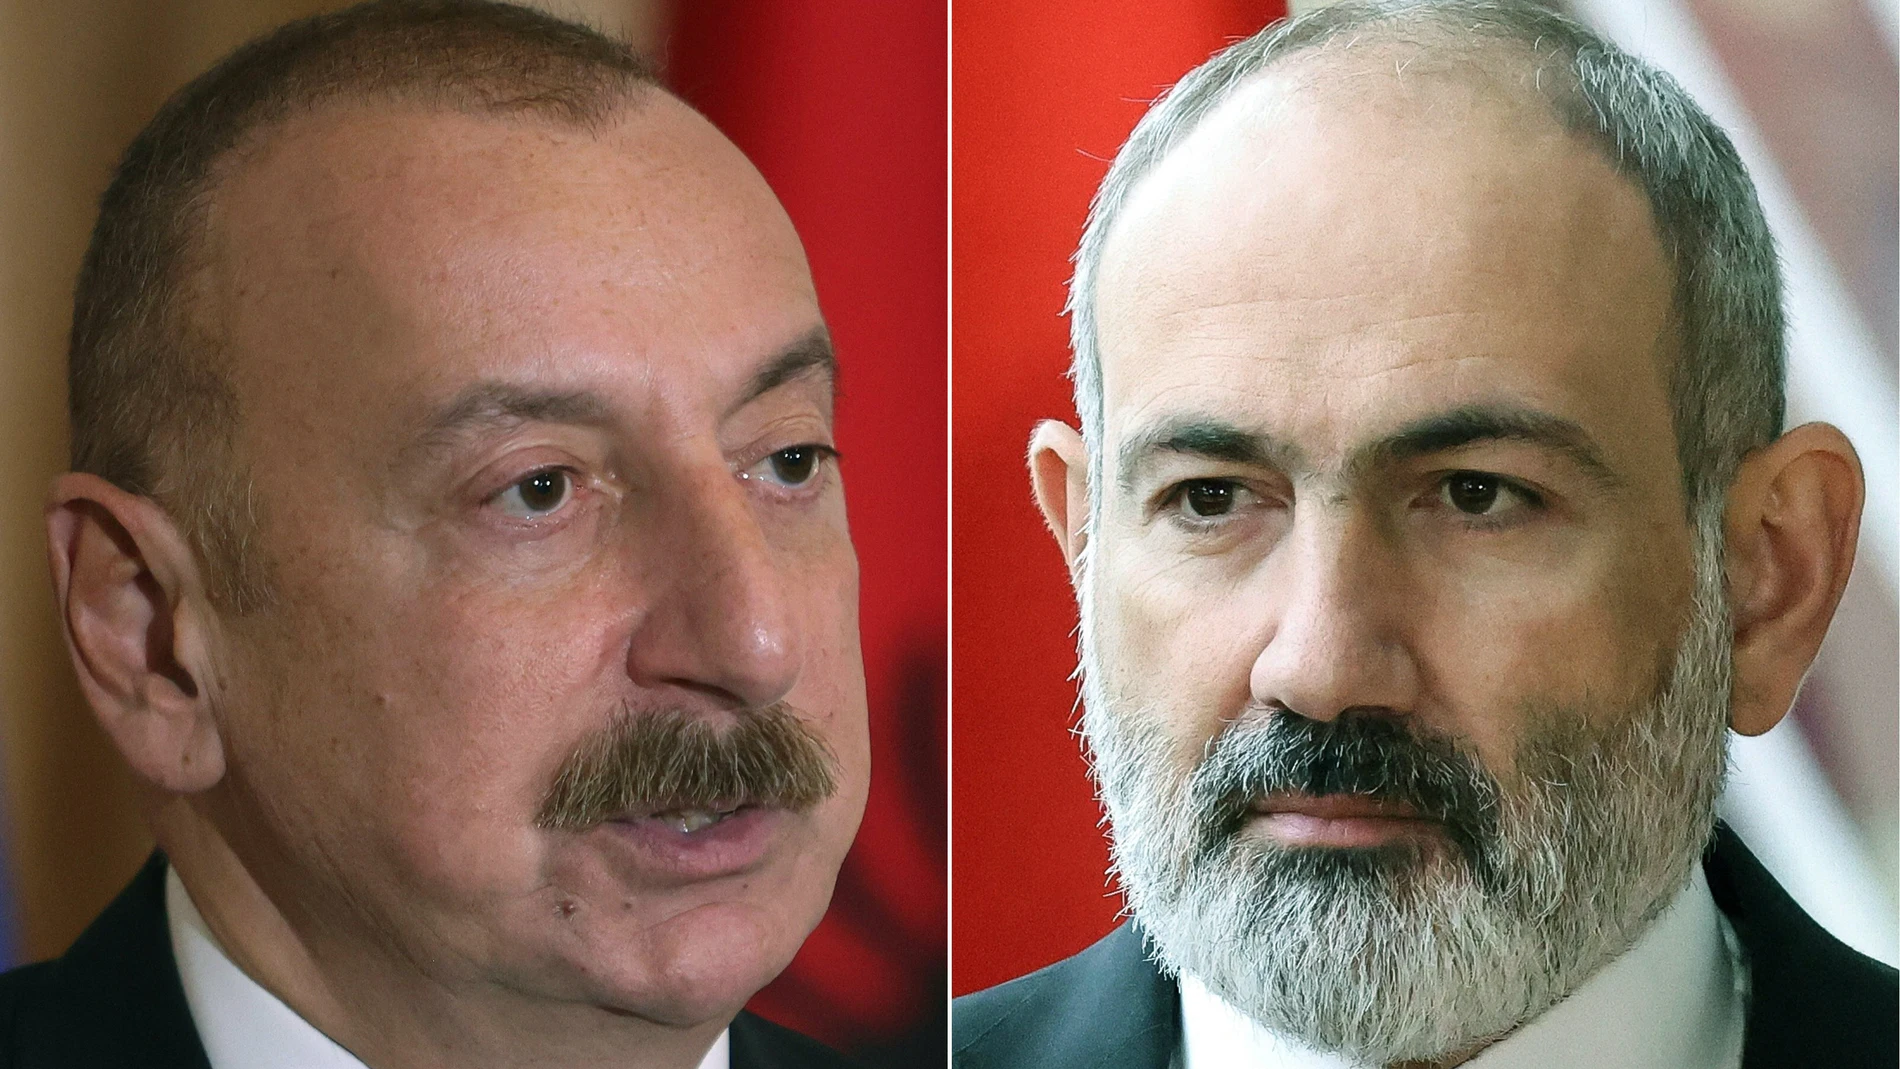 El primer ministro armenio, Nikol Pashinián, y el presidente azerí, Ilham Aliyev, mantendrán una reunión preestablecida en España el próximo mes, a pesar de la ofensiva relámpago de Bakú contra los separatistas armenios de Nagorno Karabaj.